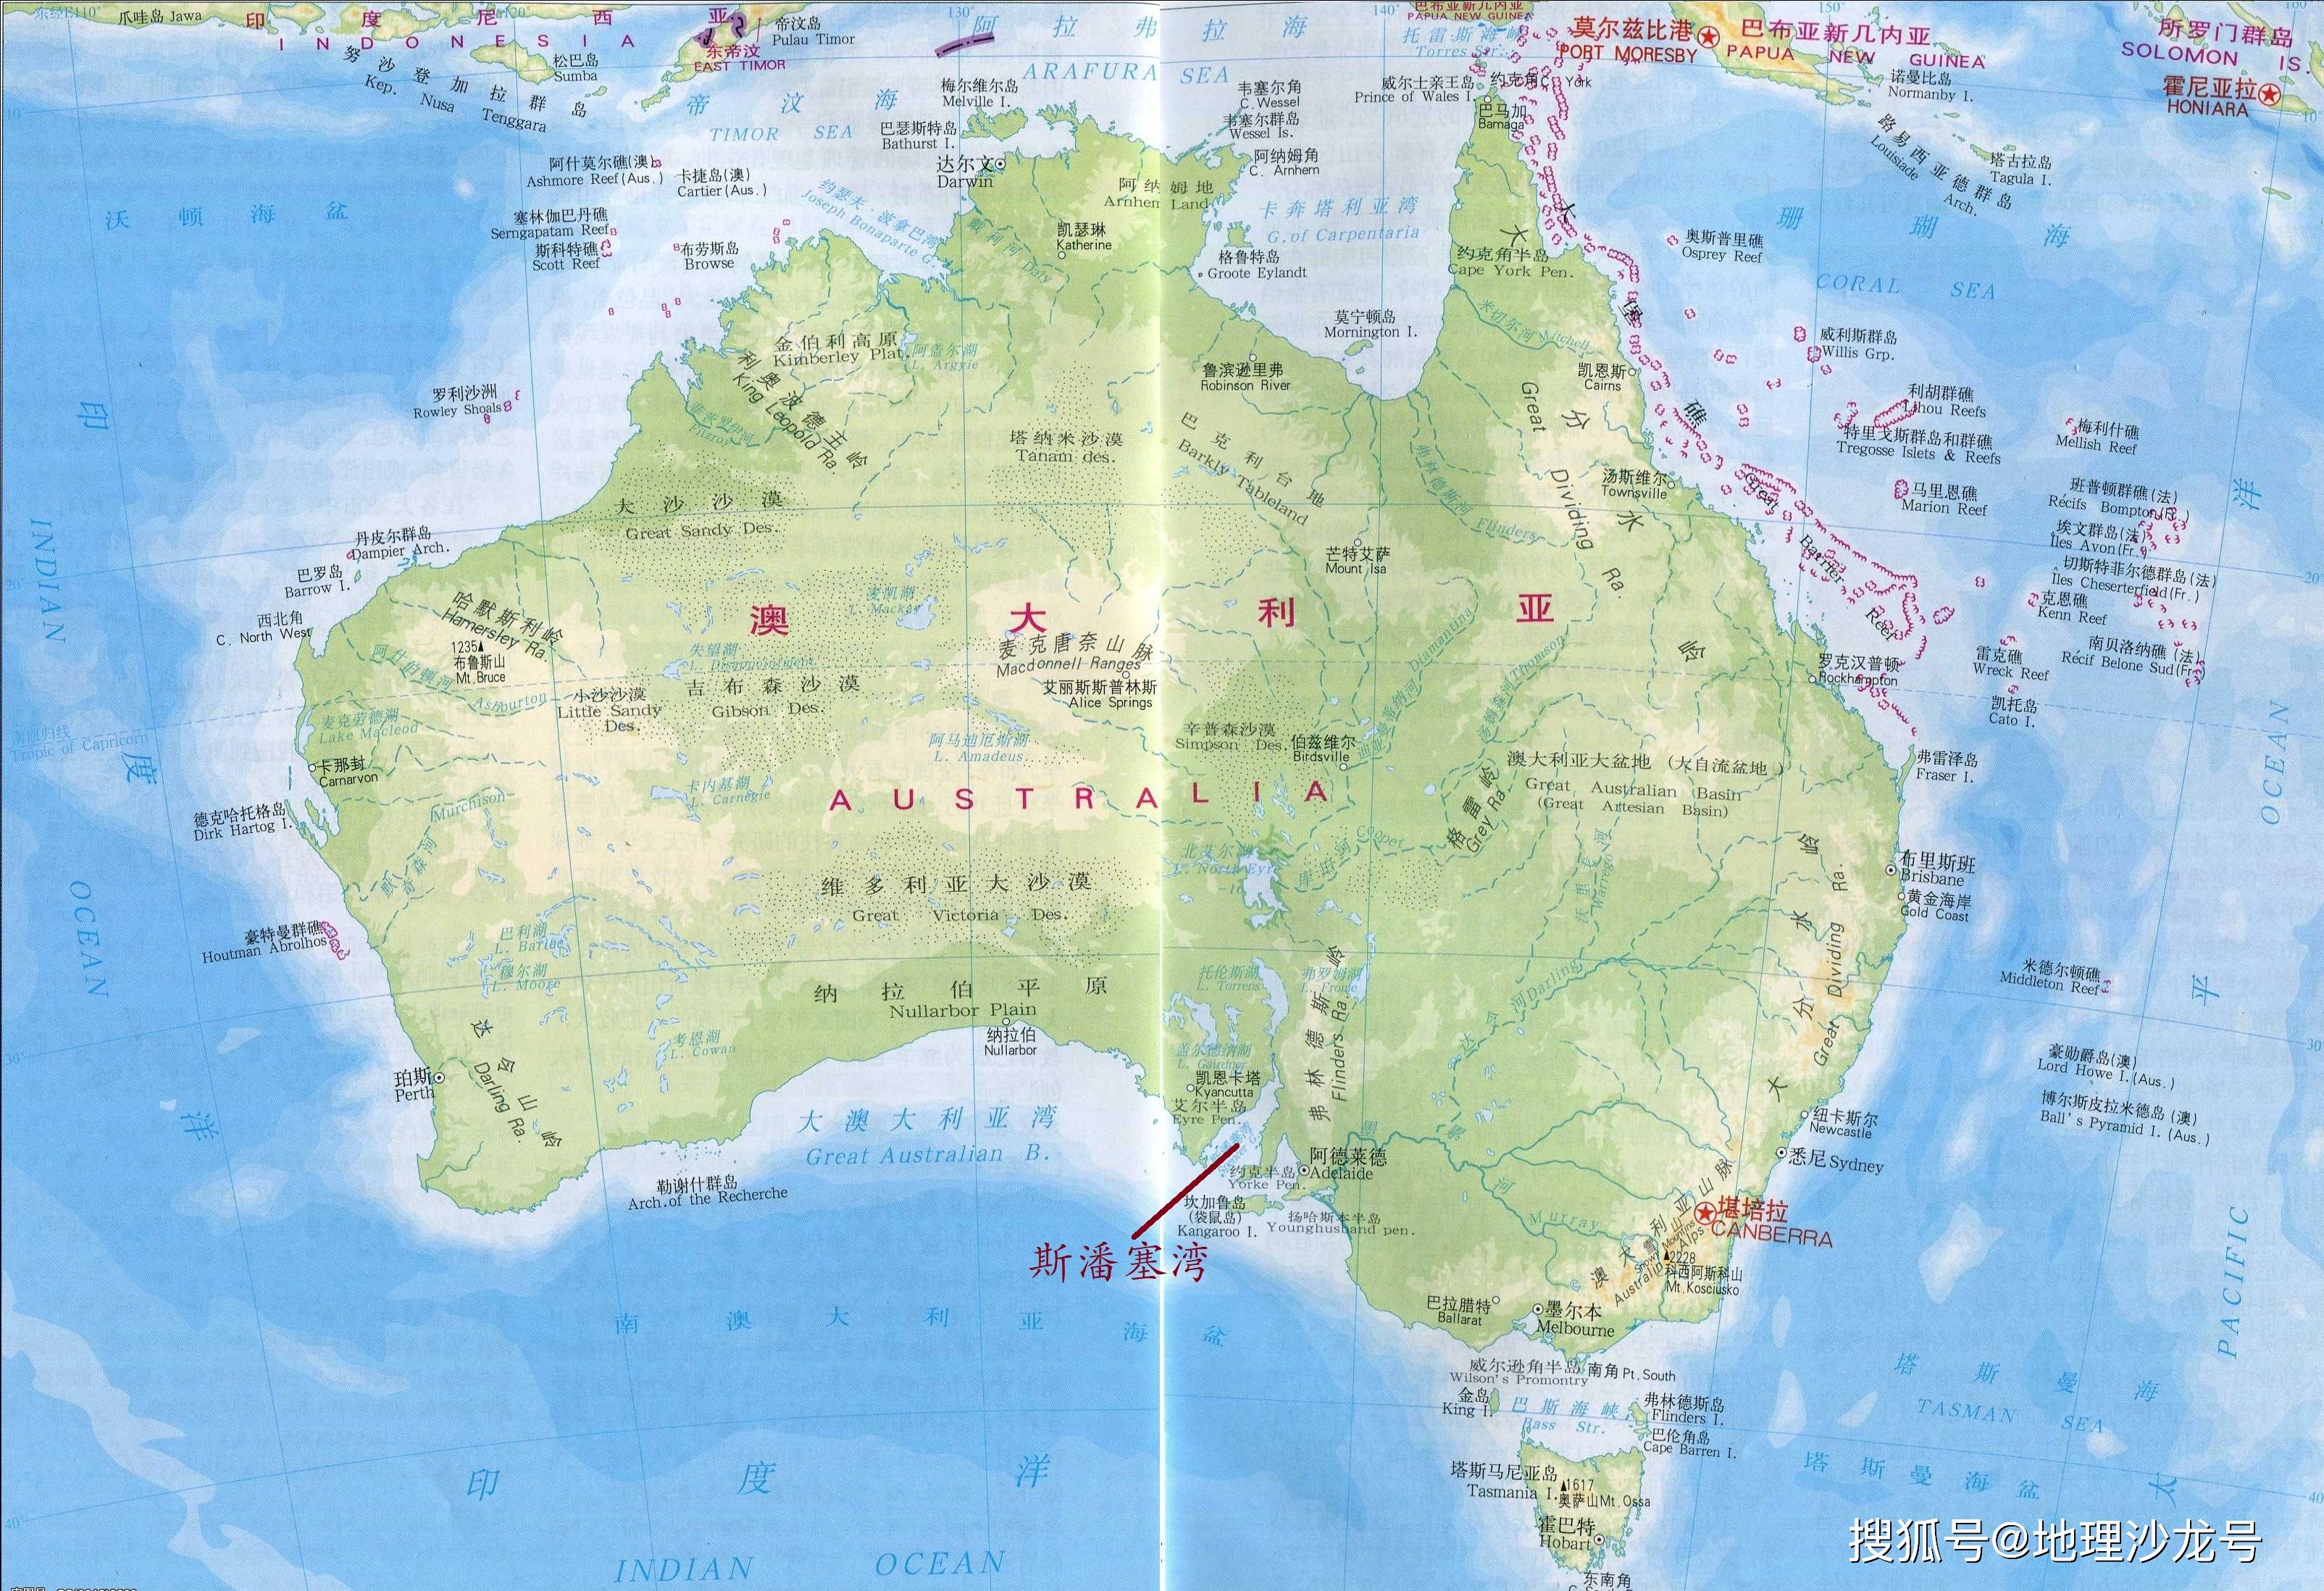 澳大利亚南部印度洋沿岸的"斯潘塞湾,是巨型乌贼的重要产卵地